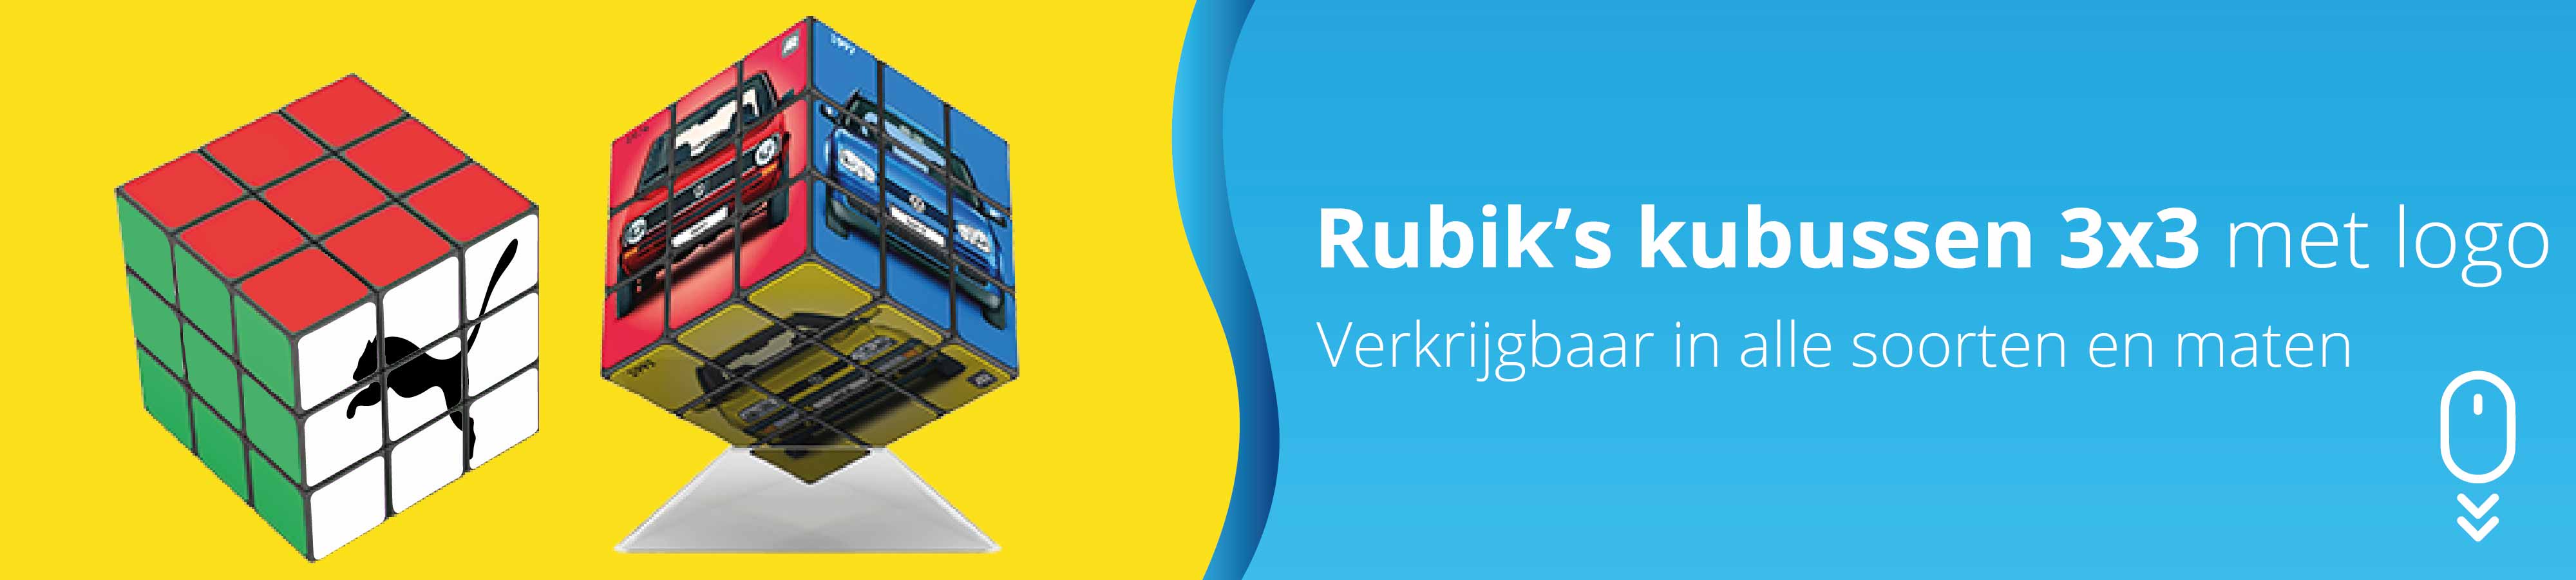 rubiks-kubus-3x3-bedrukken